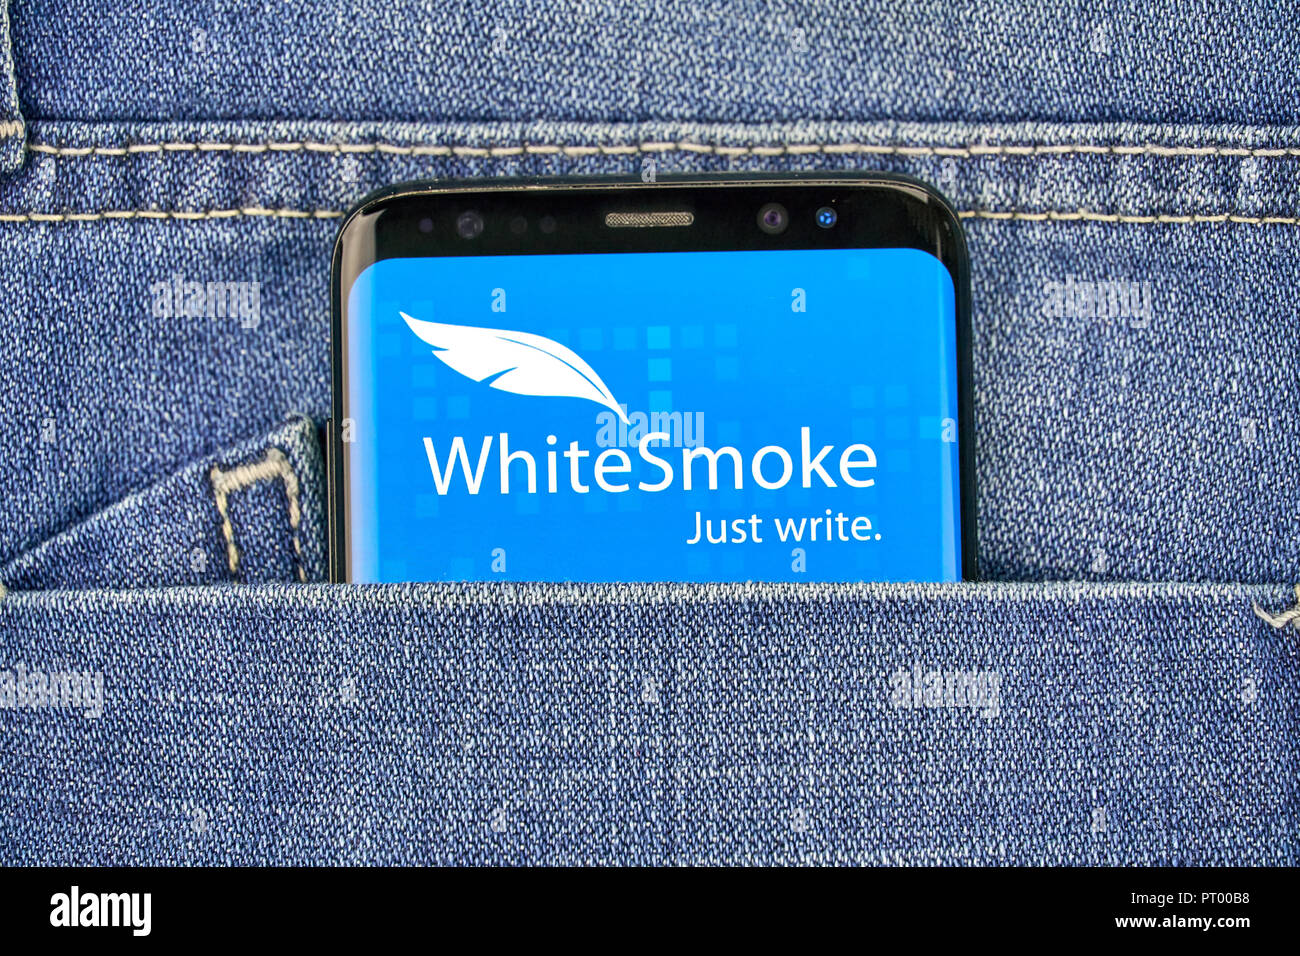 MONTREAL, KANADA - 4. OKTOBER 2018: WhiteSmoke Grammatik prüfen App auf S8 Android Gerät. WhiteSmoke app ist in englischer Sprache fehler Melder und correc Stockfoto